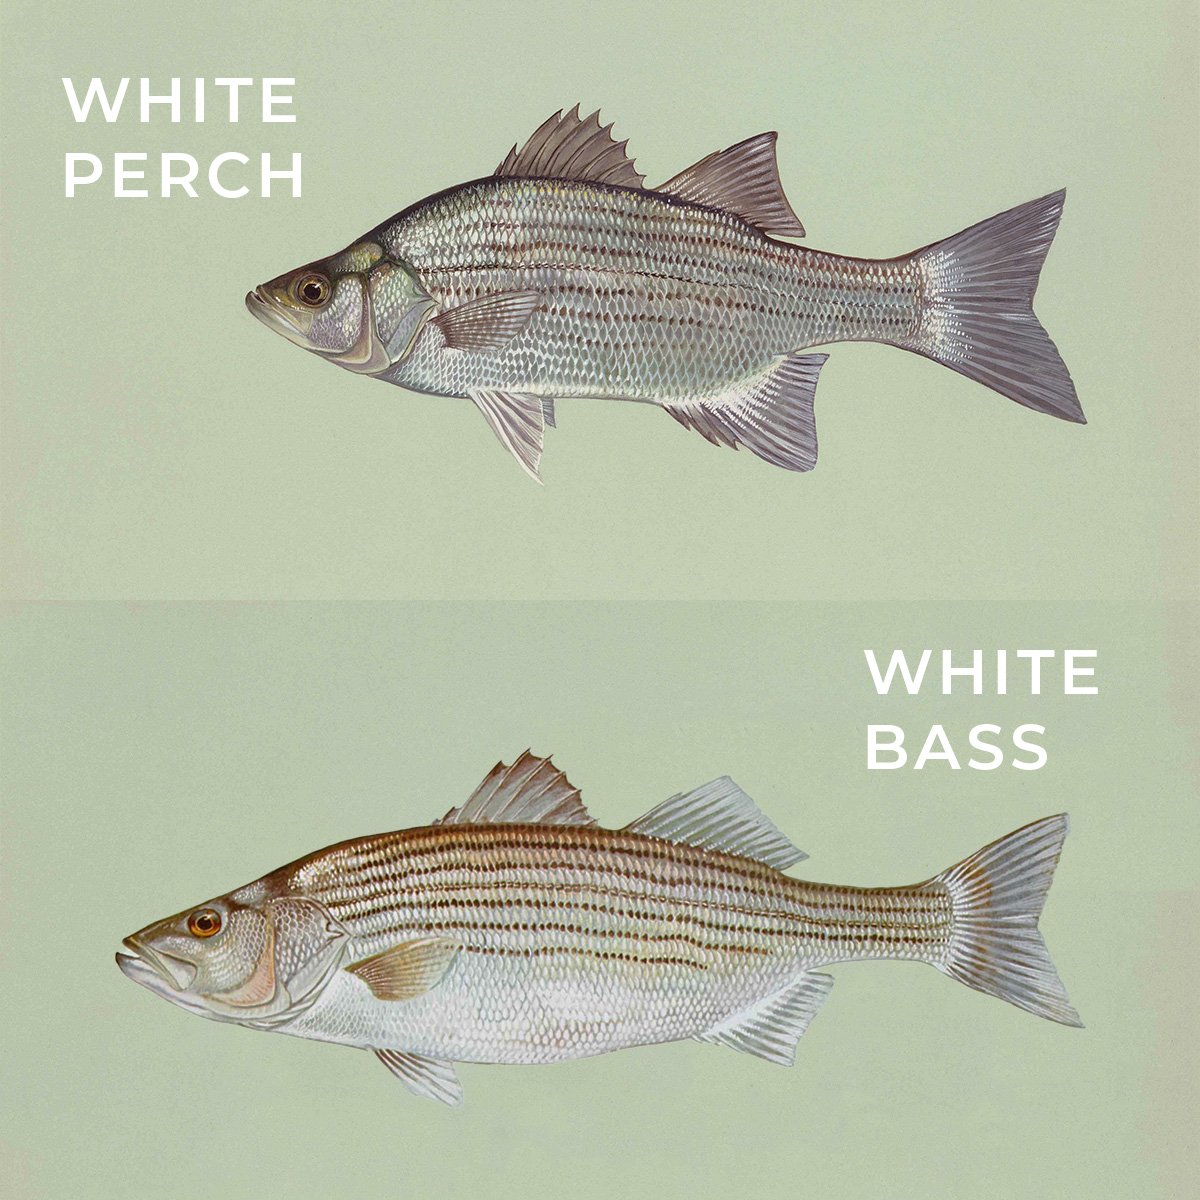 white perch vs white bass